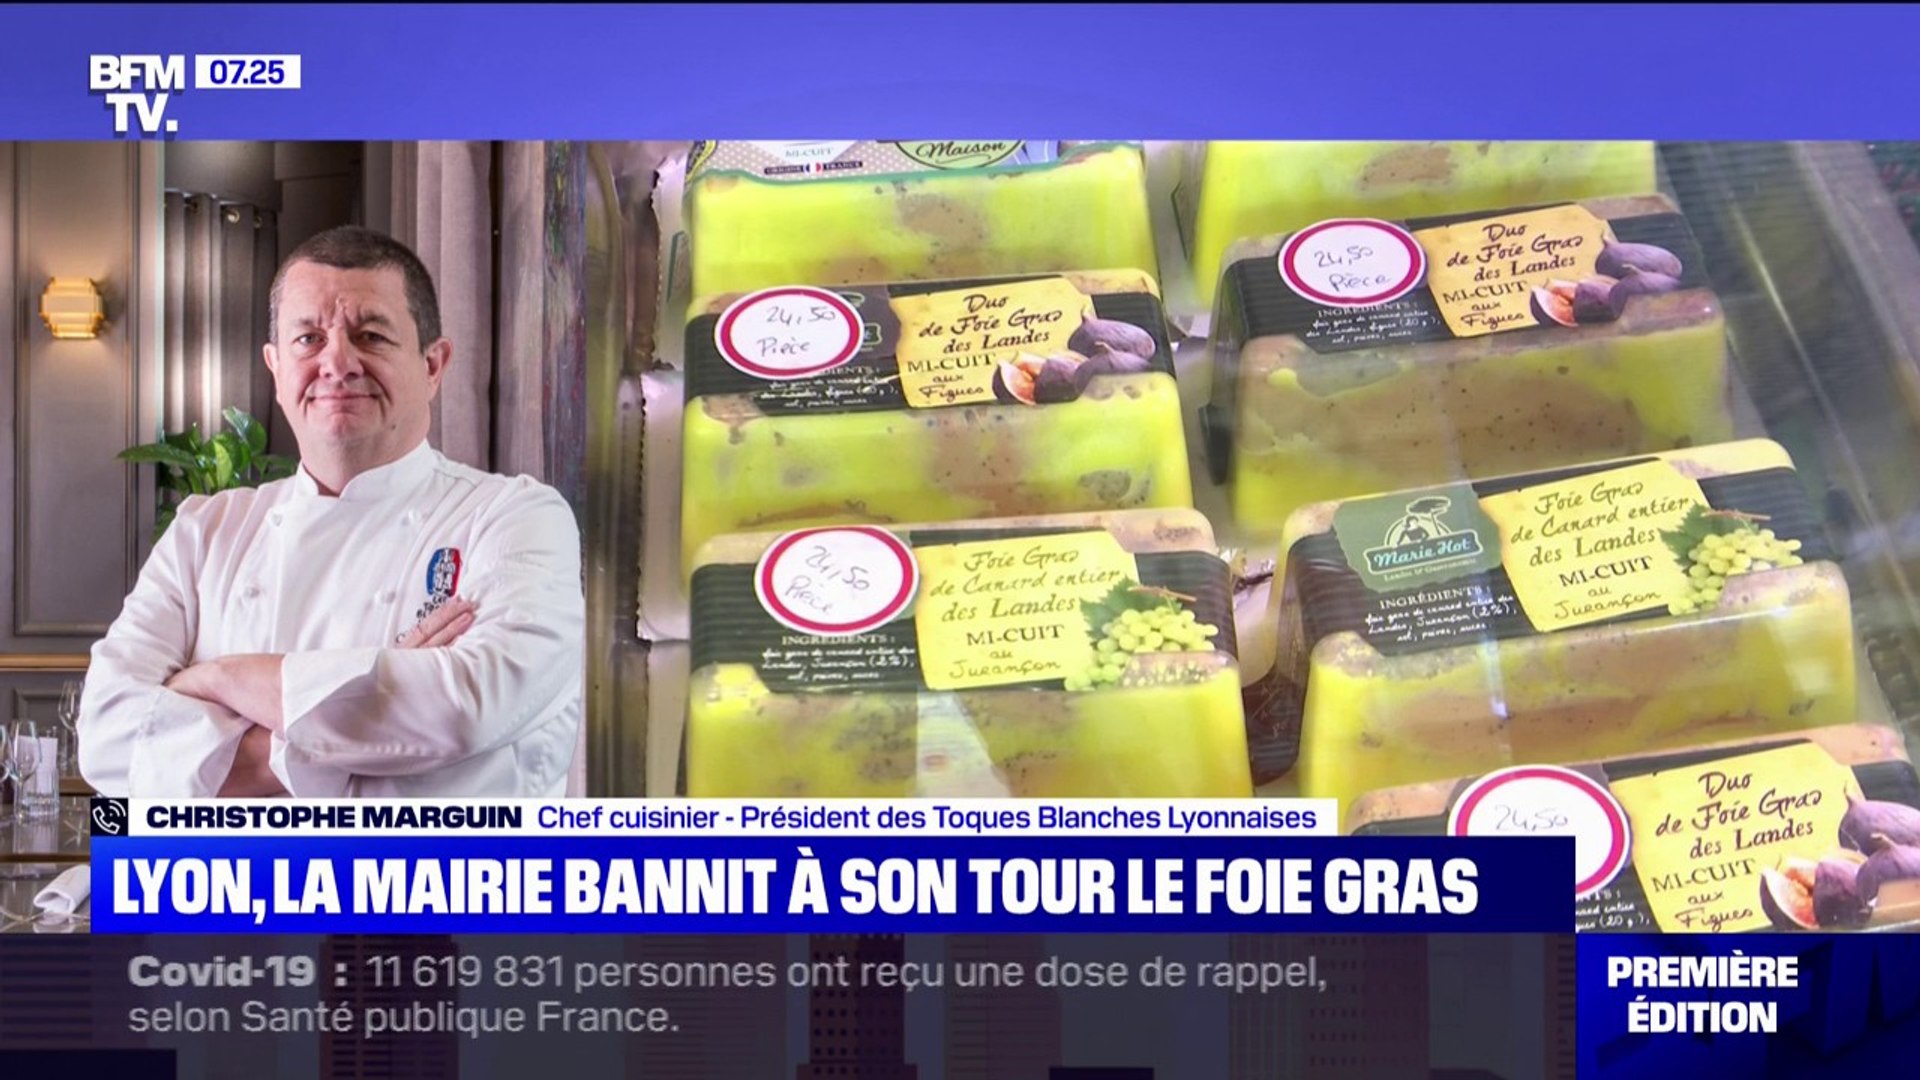 Foie gras banni des réceptions officielles à Lyon: le chef Christophe  Marguin dénonce un coup de com' - Vidéo Dailymotion